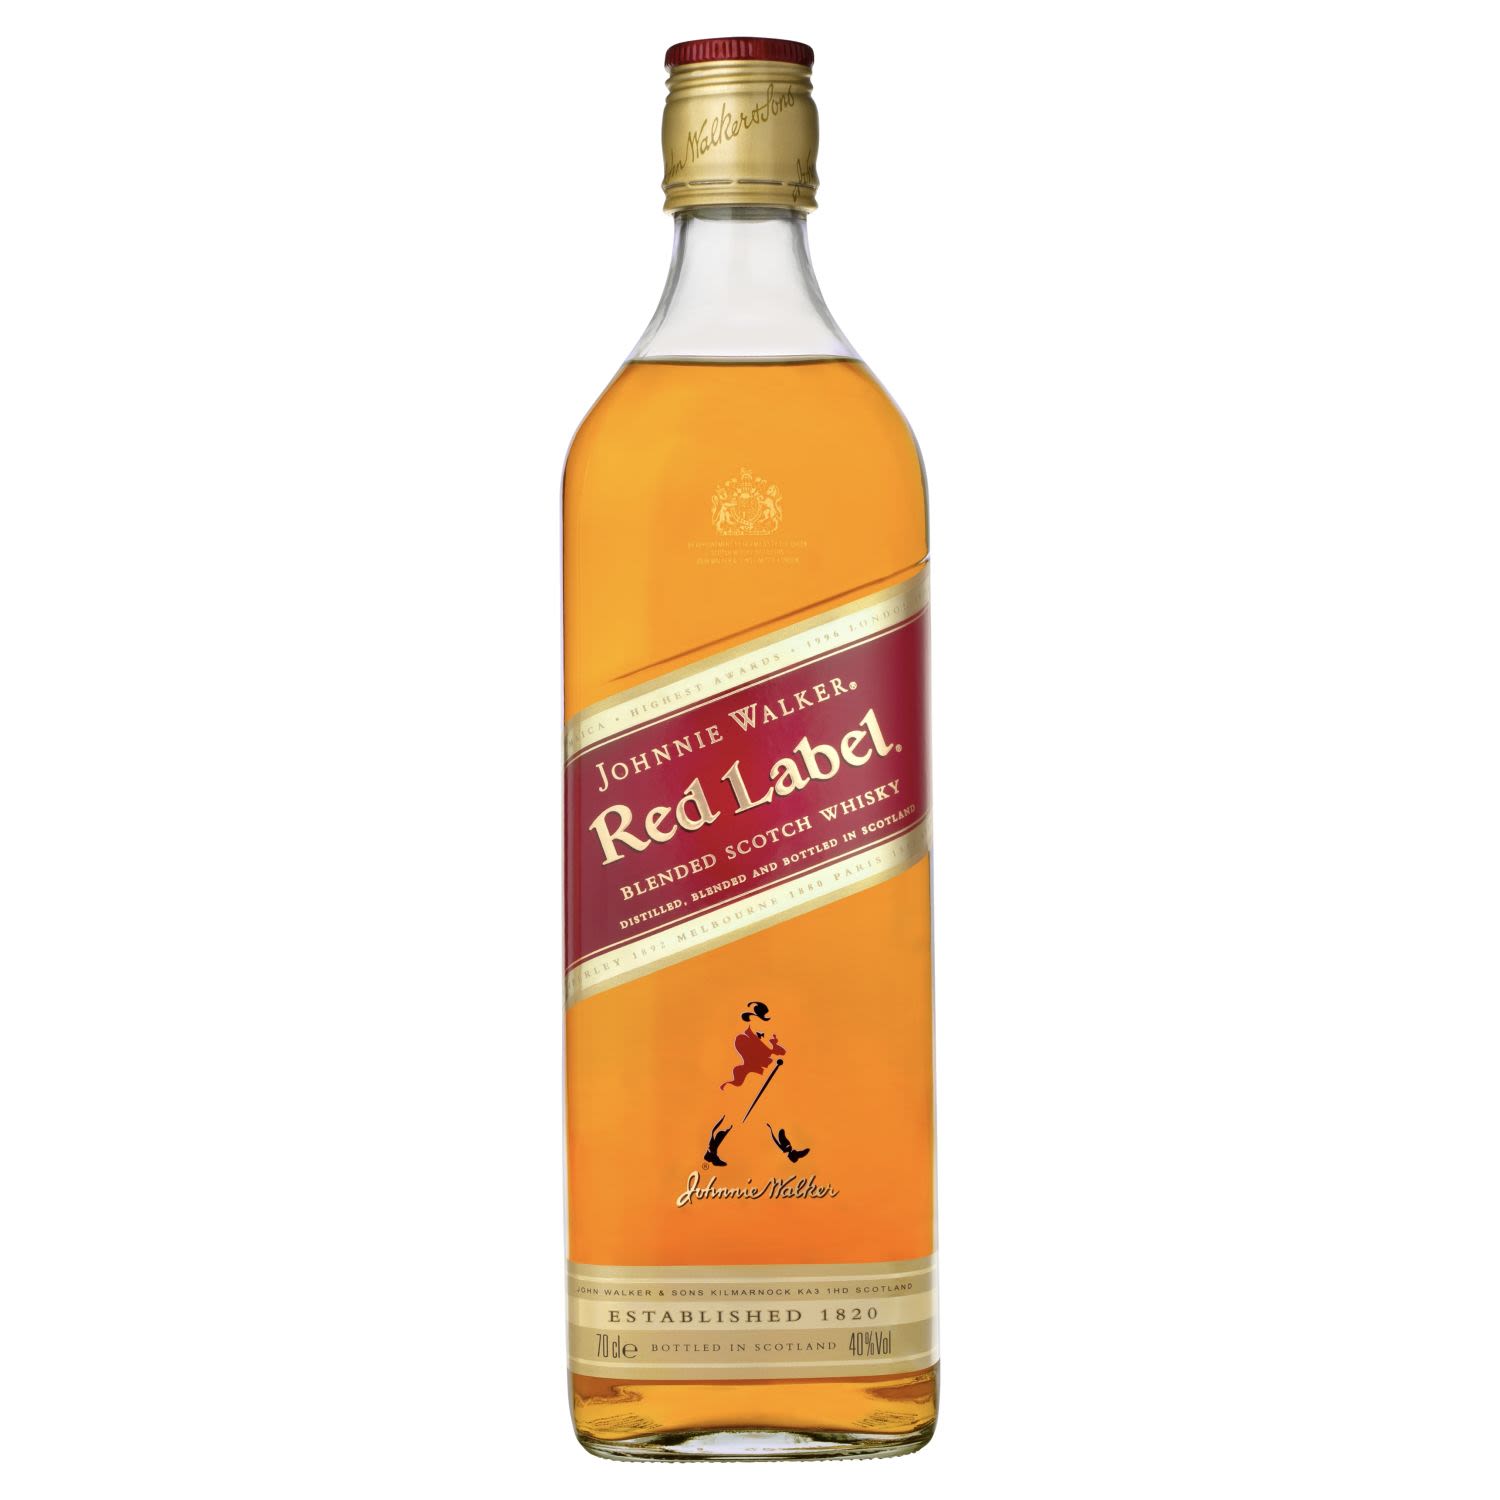 Johnnie Walker Red Label Scotch Whisky 700mL Bottle